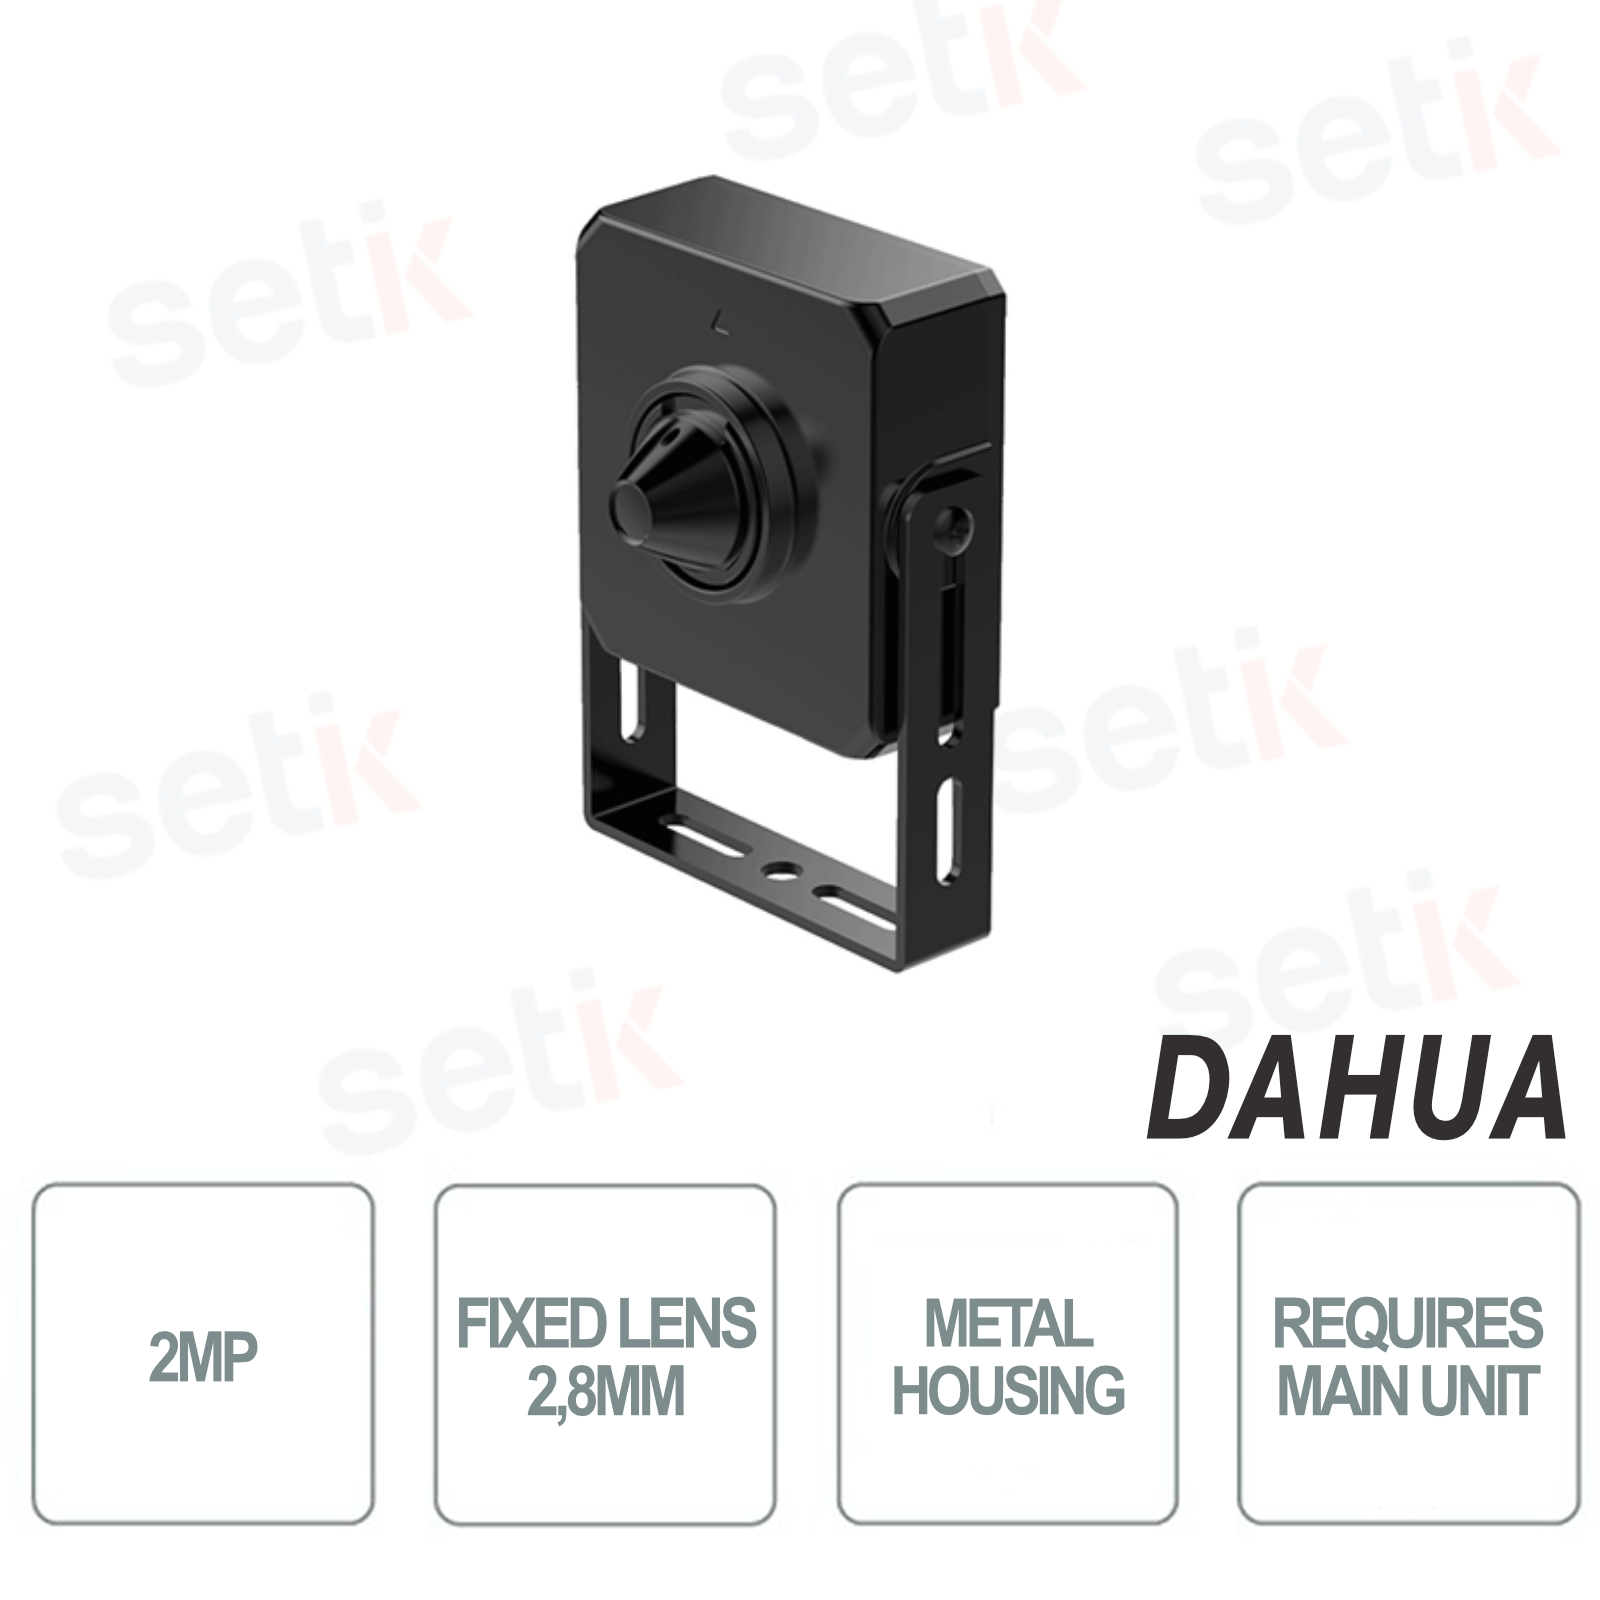 IPC-HUM8241-L4 - Dahua - Sensore Obiettivo mini telecamera IP da 2MP 